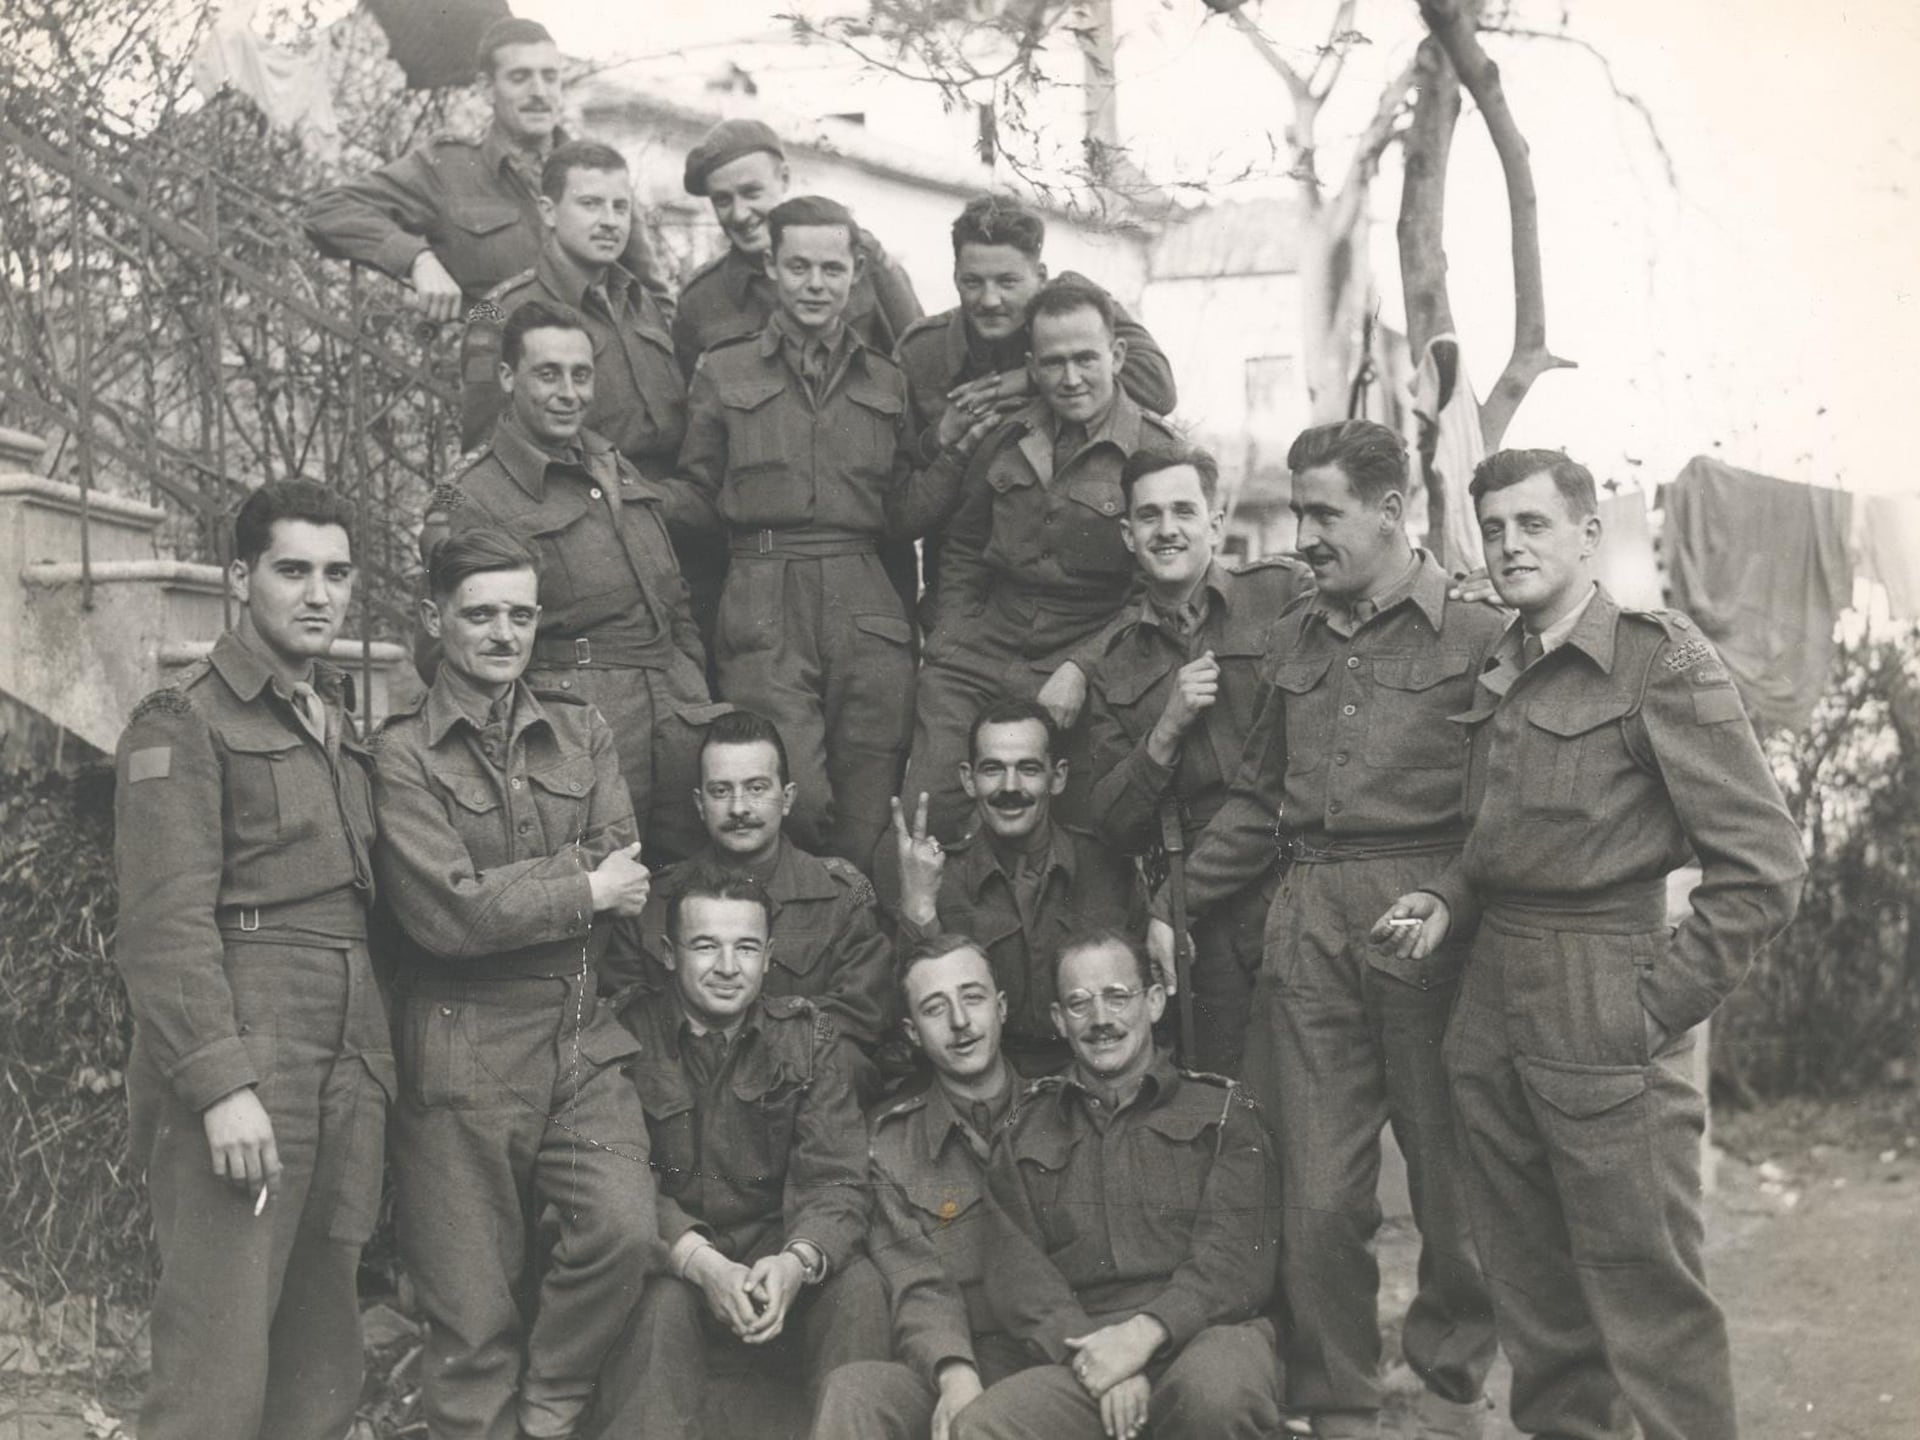 Officiers souriants du Royal 22e Régiment en Angleterre, en octobre 1942 - on sent leur complicité et leur optimisme, alors qu'un d'eux fait le V de la victoire, au centre de l'image